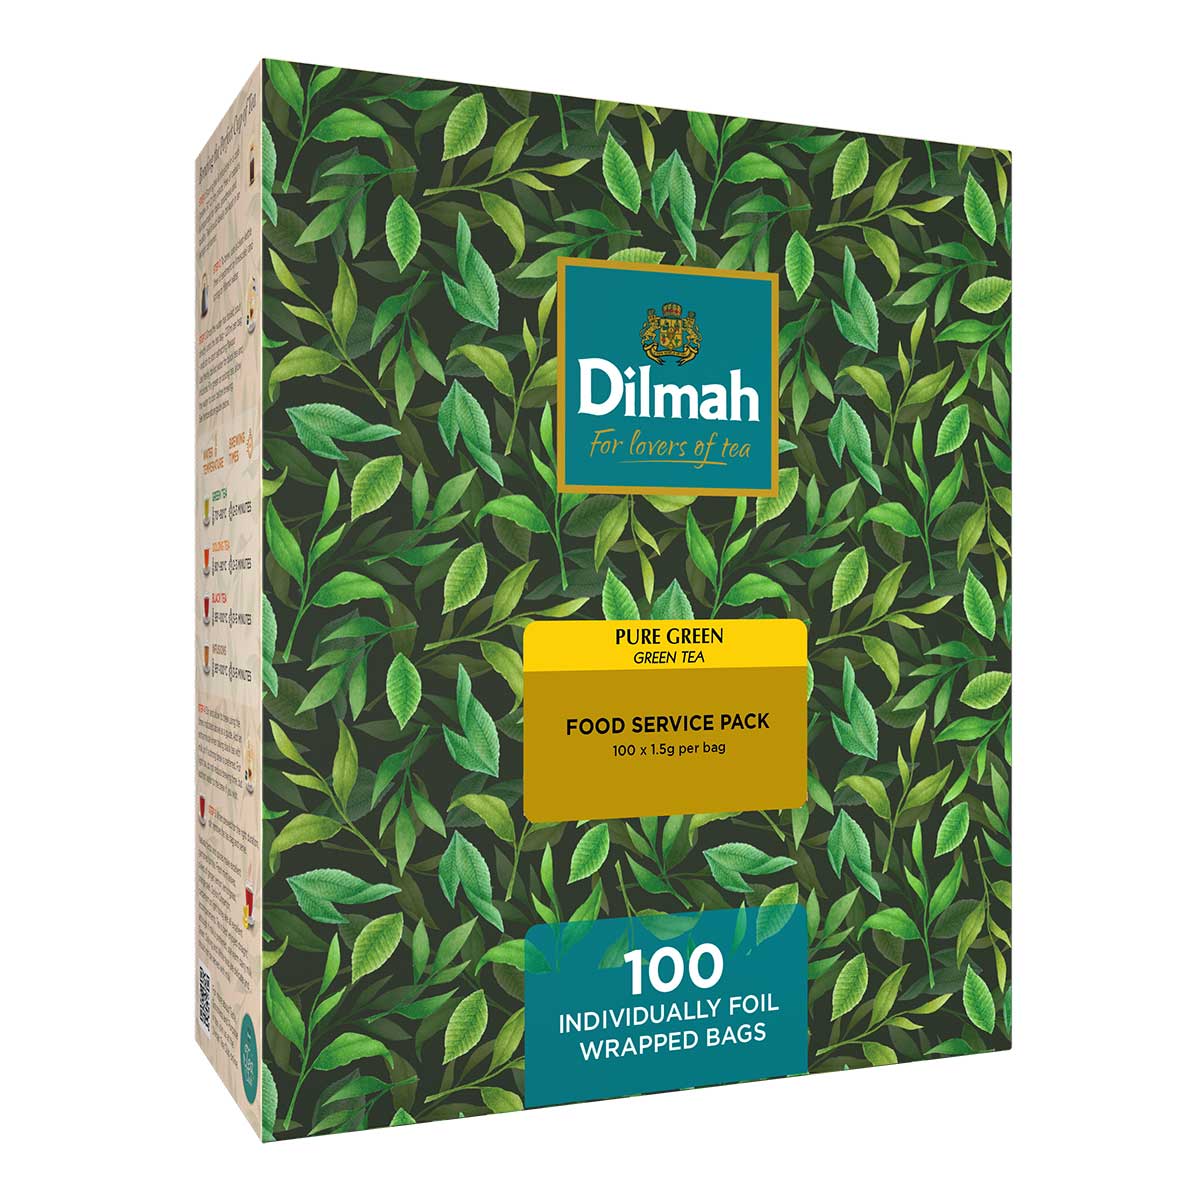 Aannemelijk Maan ik ben gelukkig Dilmah Groene thee | Pure Green Tea | 100 theezakjes – Dilmah Europe